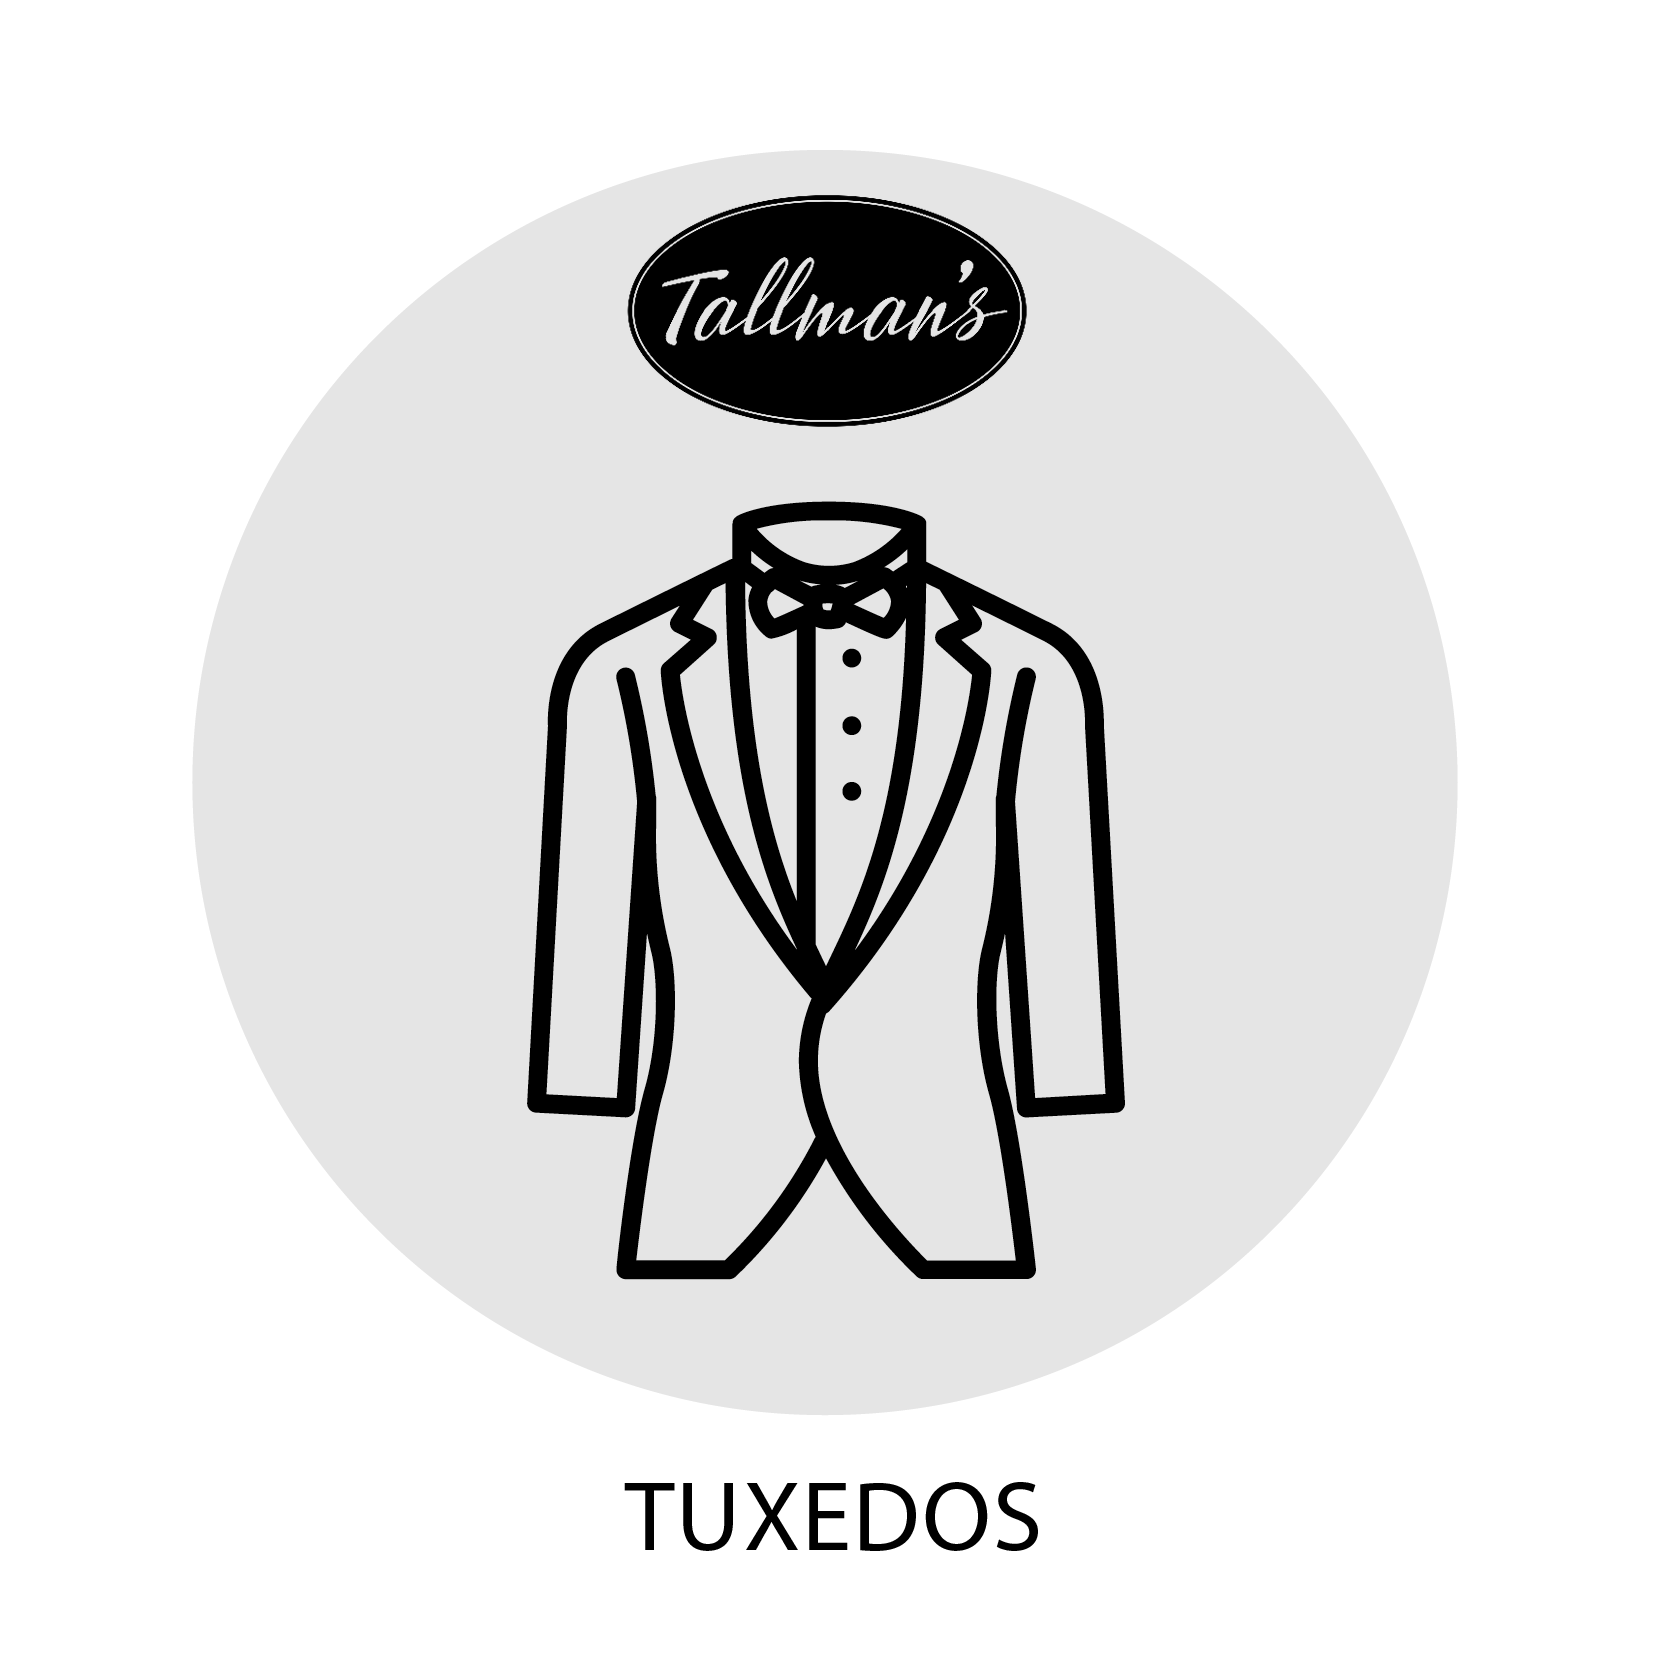 Tallmans_tuxedos.png